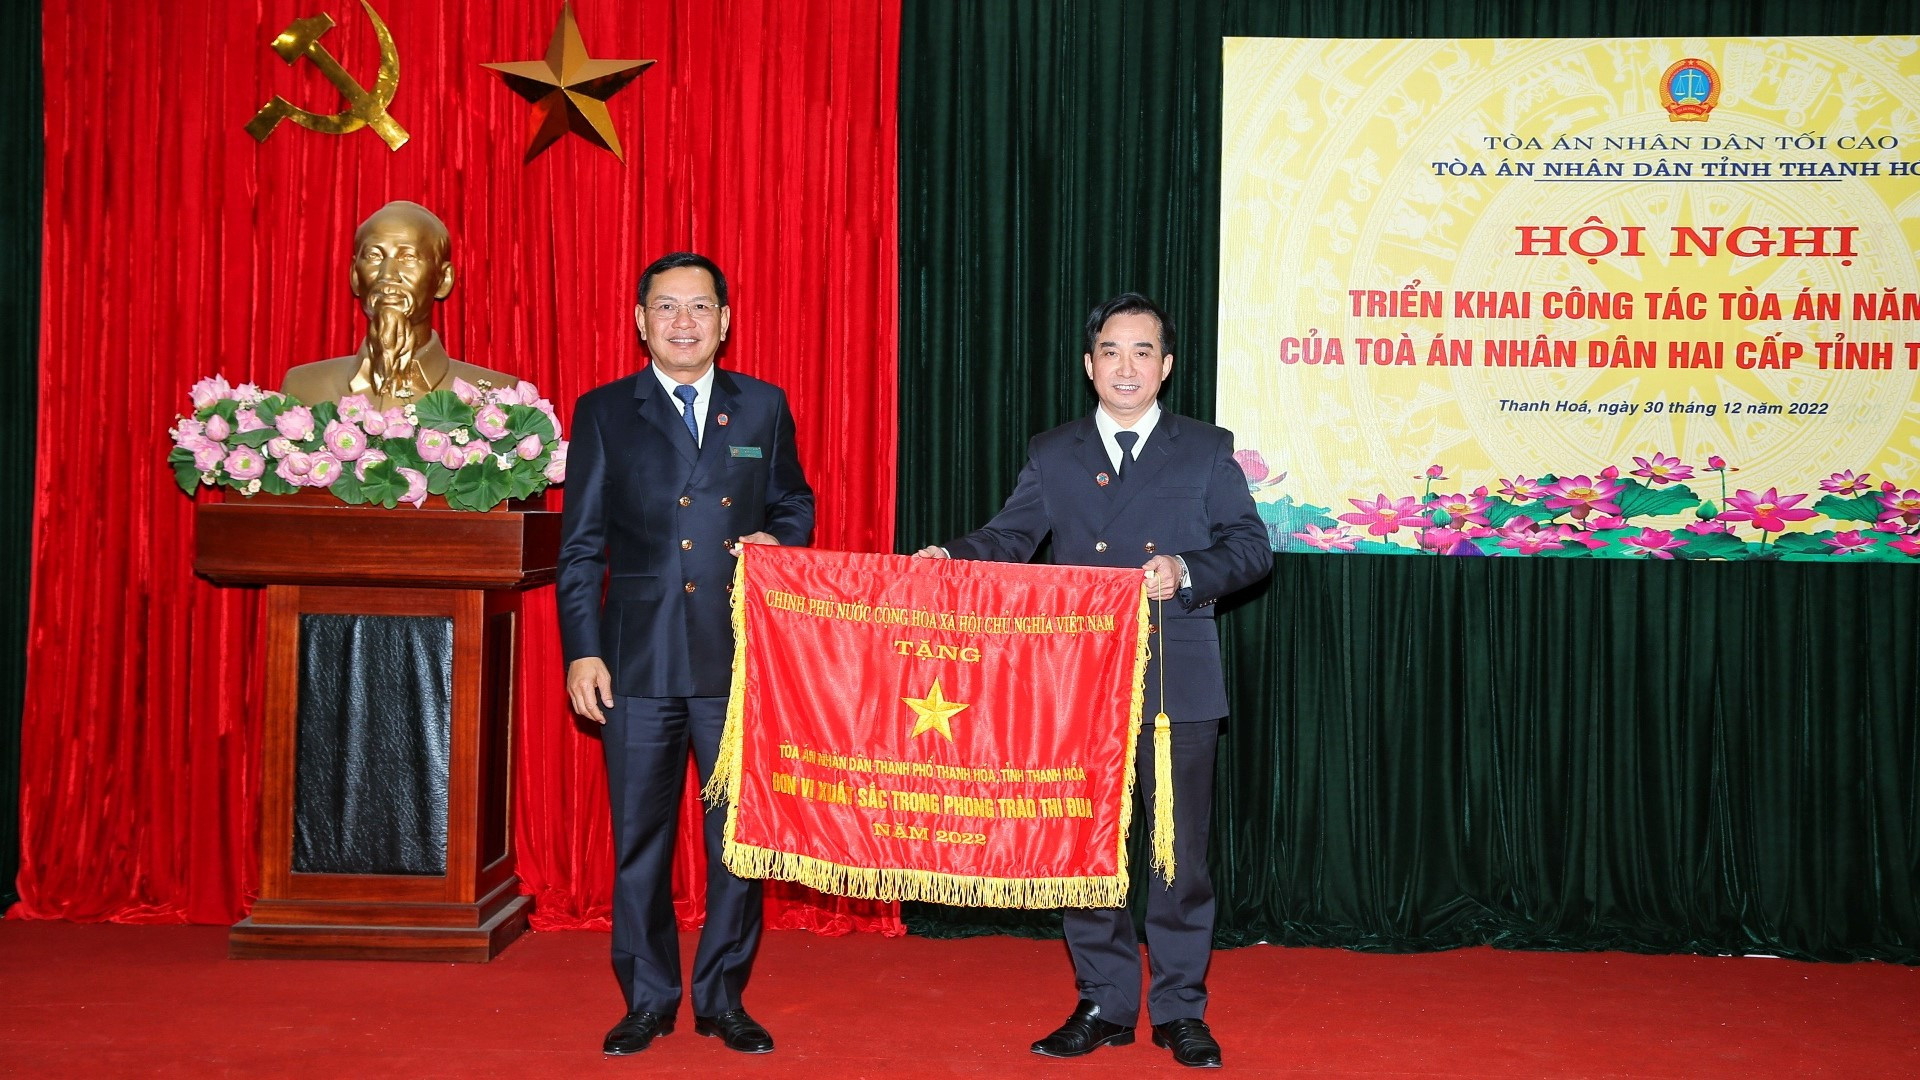 Đồng chí Nguyễn Văn Du, Ủy viên Ban cán sự đảng, Phó Chánh án TANDTC trao tặng cờ thi đua Chính phủ cho TAND thành phố Thanh Hóa